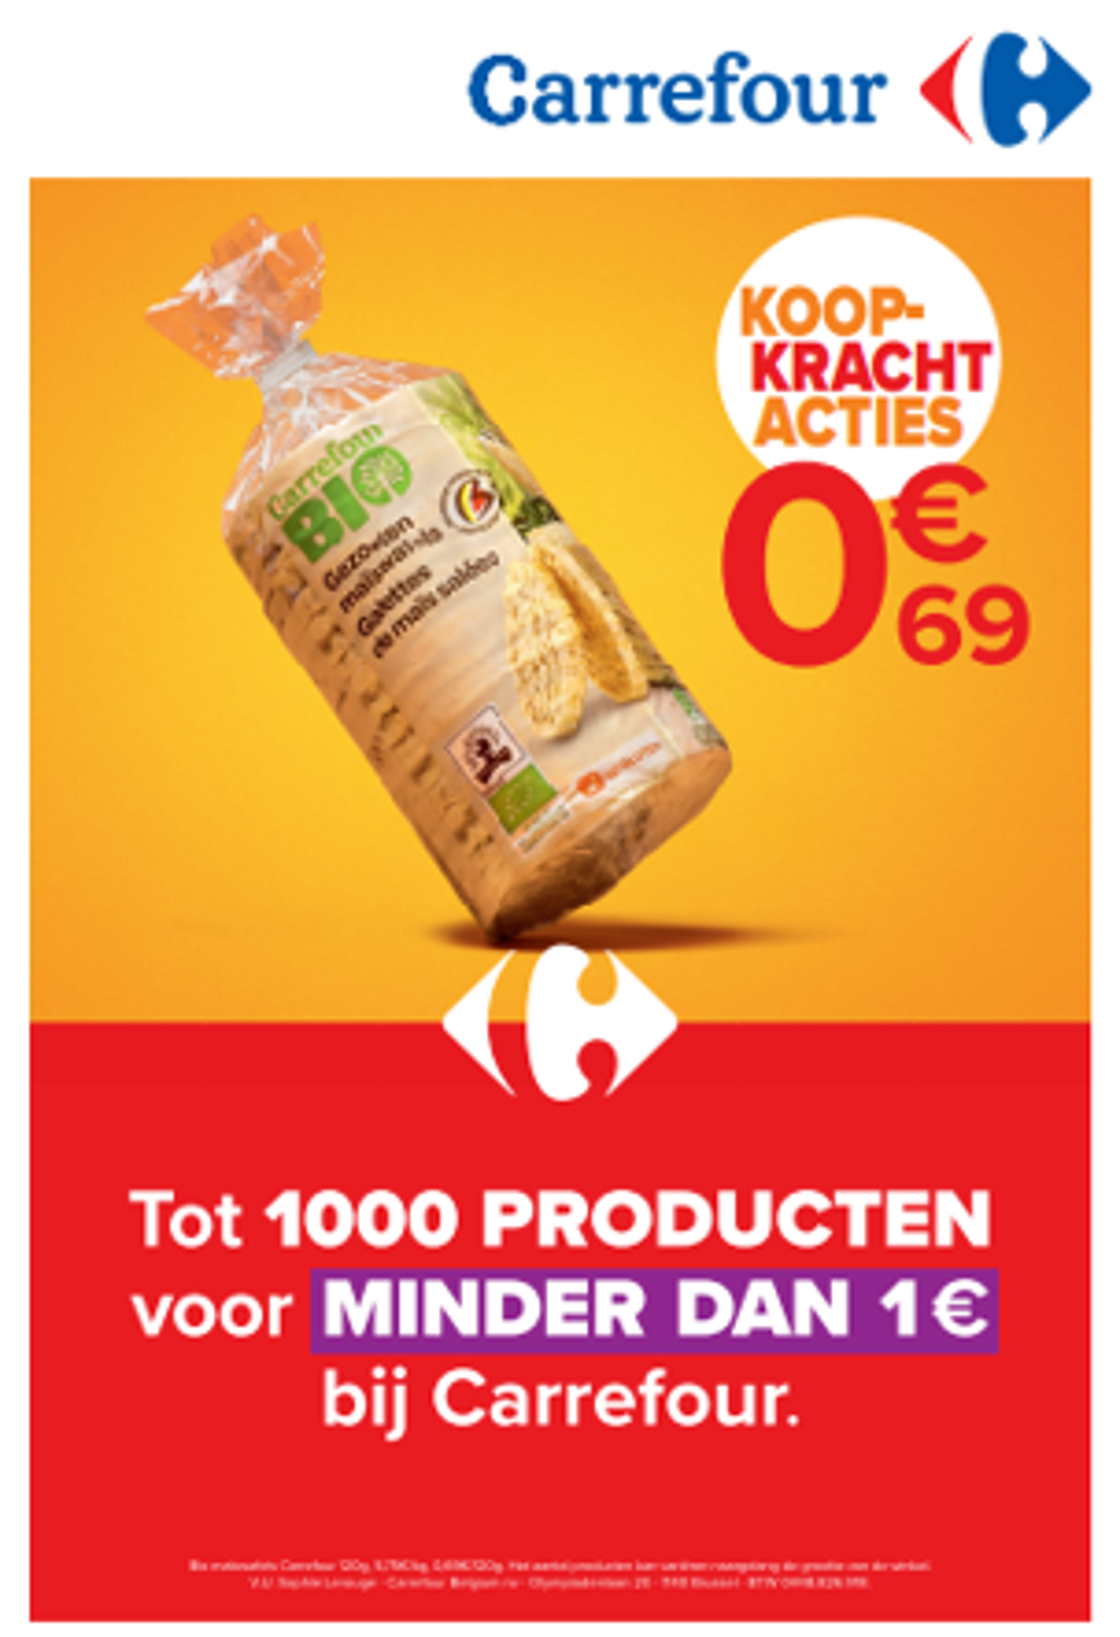 Carrefour gaat verder met de campagne "Koopkrachtacties" om zonder beperkingen te blijven kunnen kopen en lanceert de actie “1000 producten voor minder dan 1 euro”